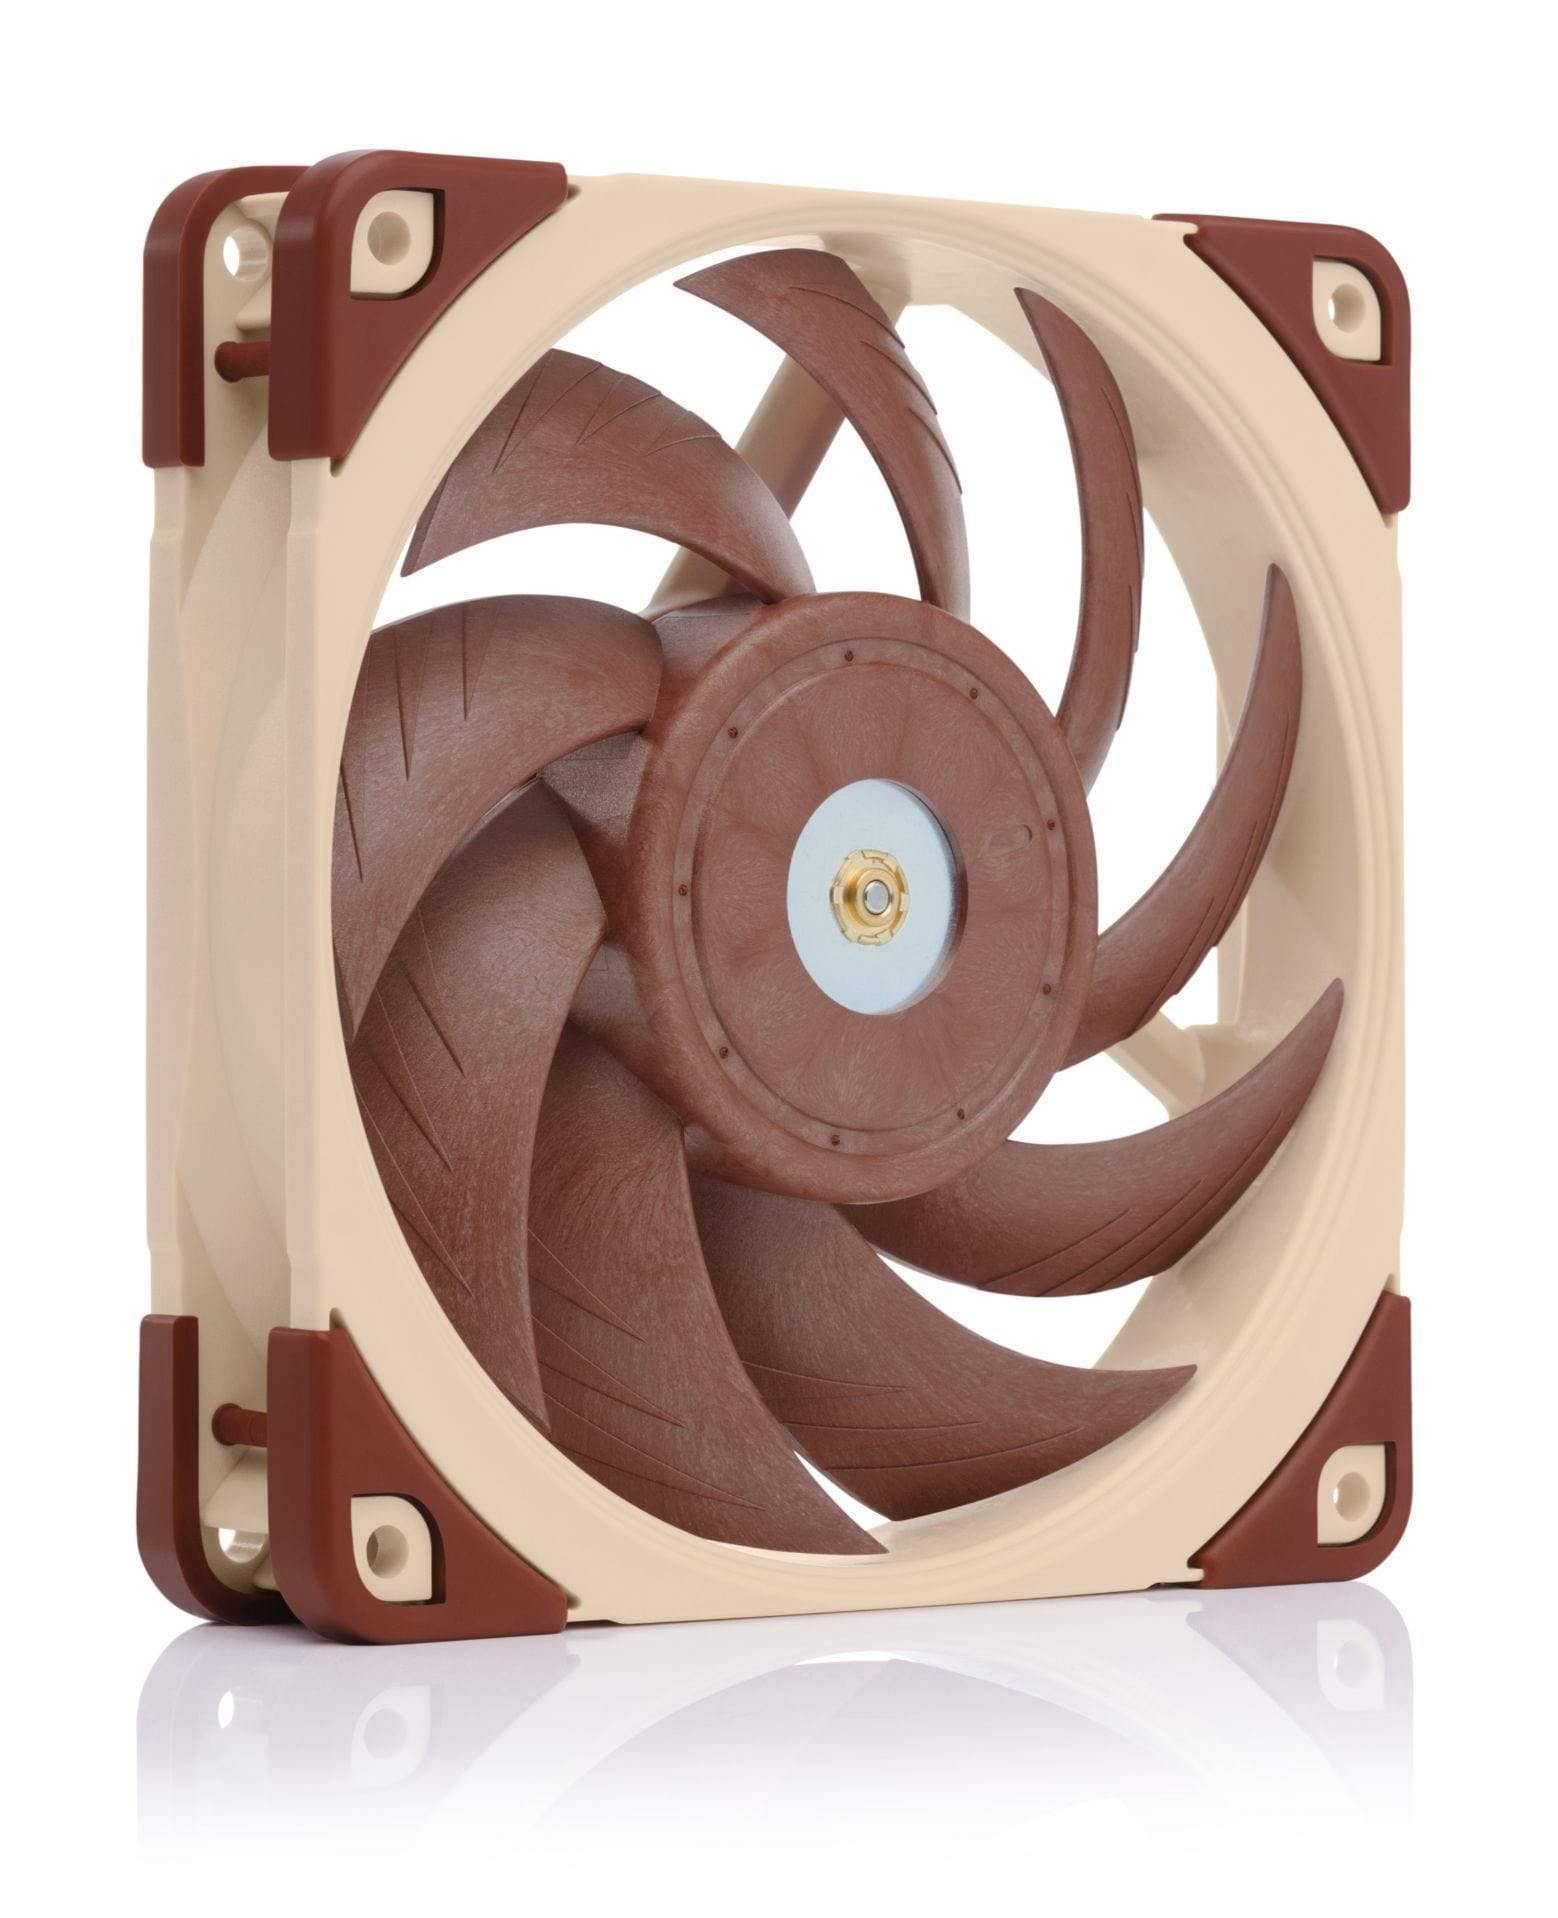 Noctua Case Fans 5x Noctua NF-A12x25 120mm Ultra Silent fans